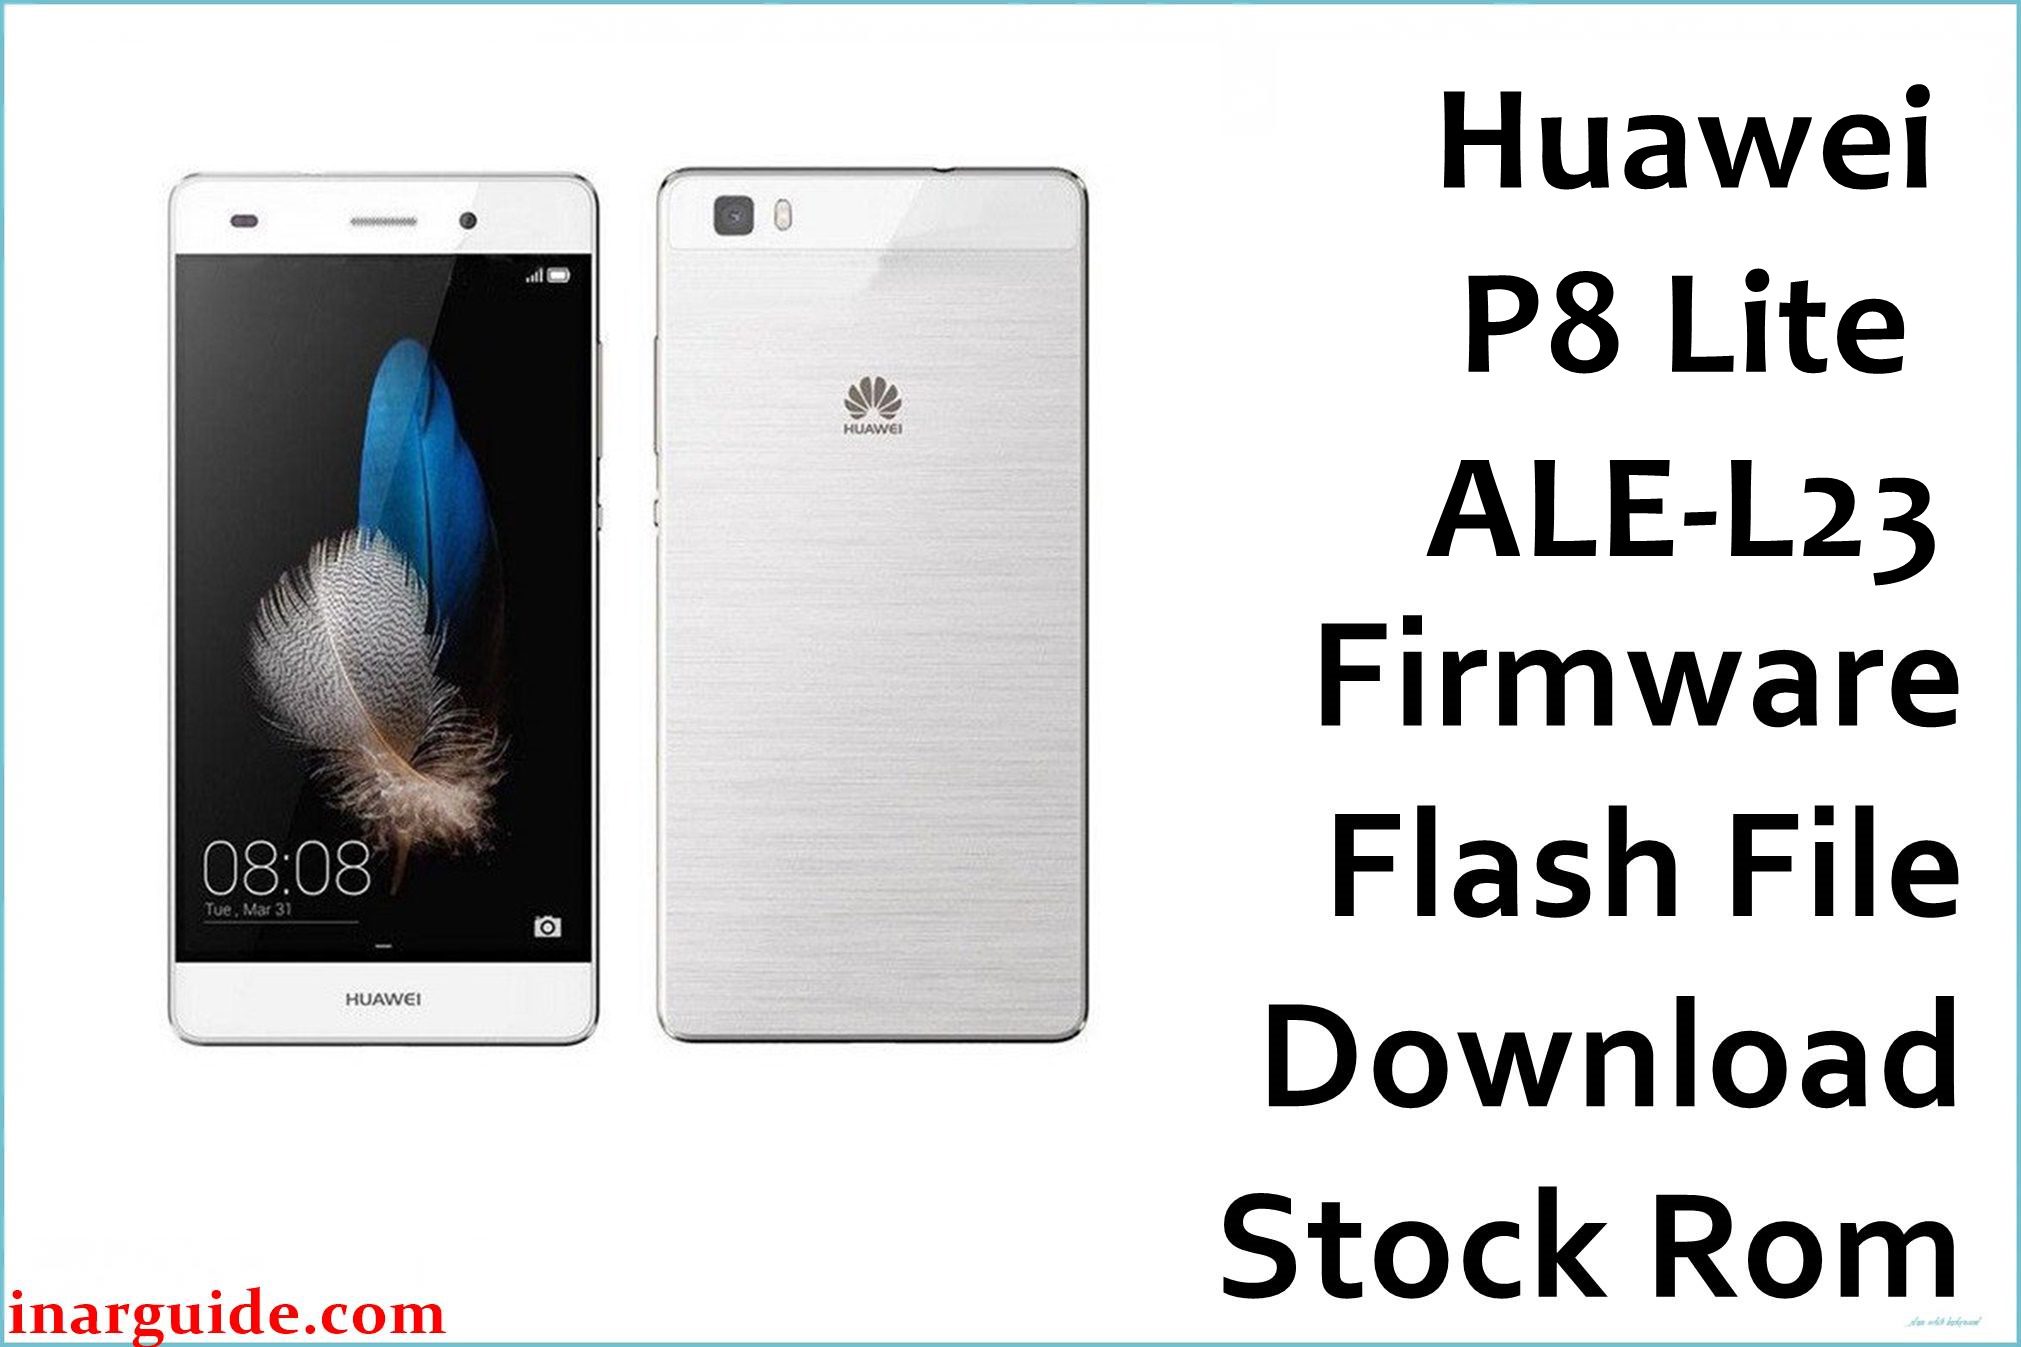 Huawei P8 Lite ALE L23